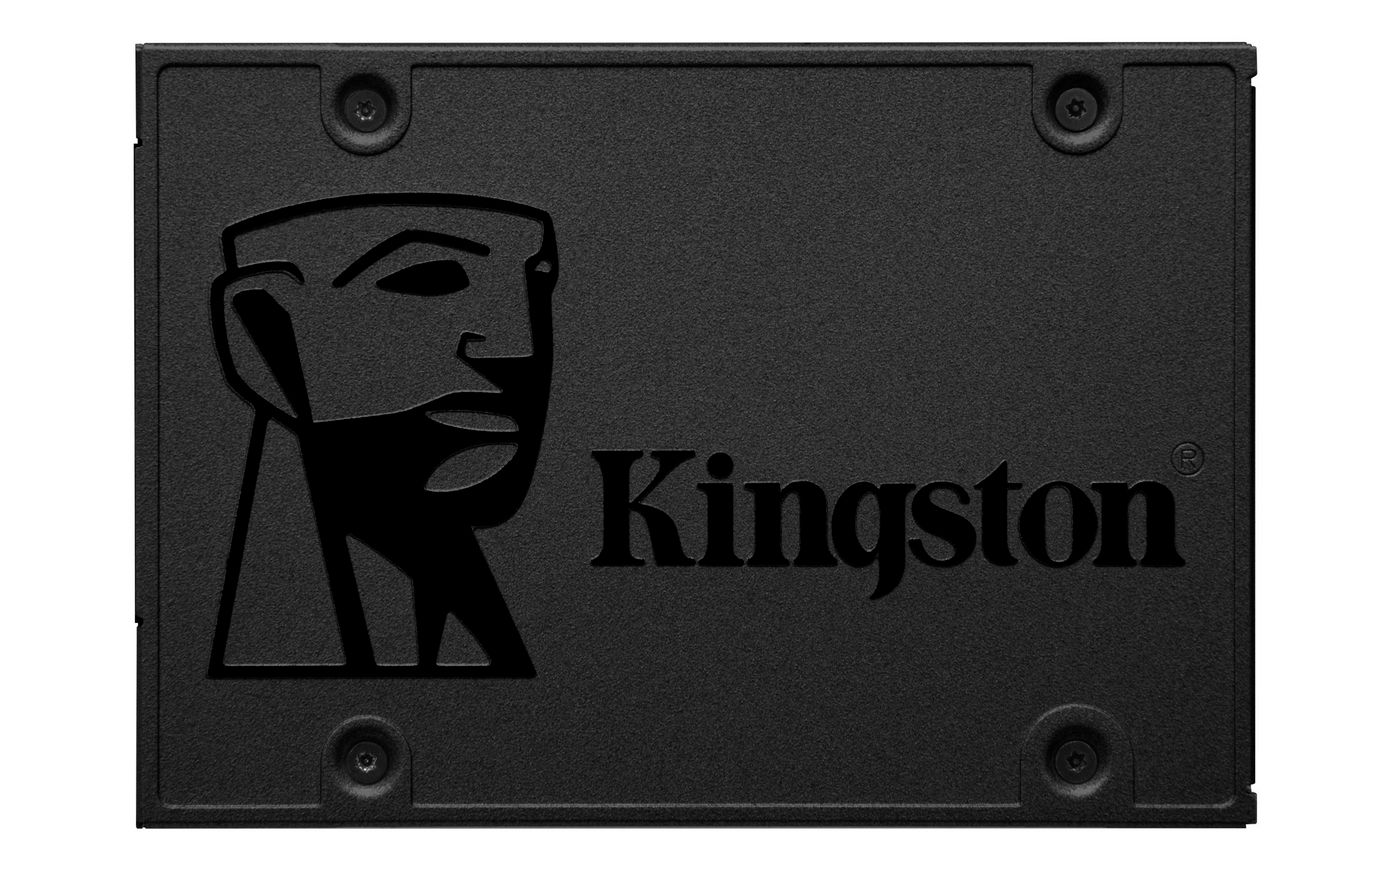 Kingston SA400S37240G SA400S37/240G A400 SSD 240GB Serial ATA III 